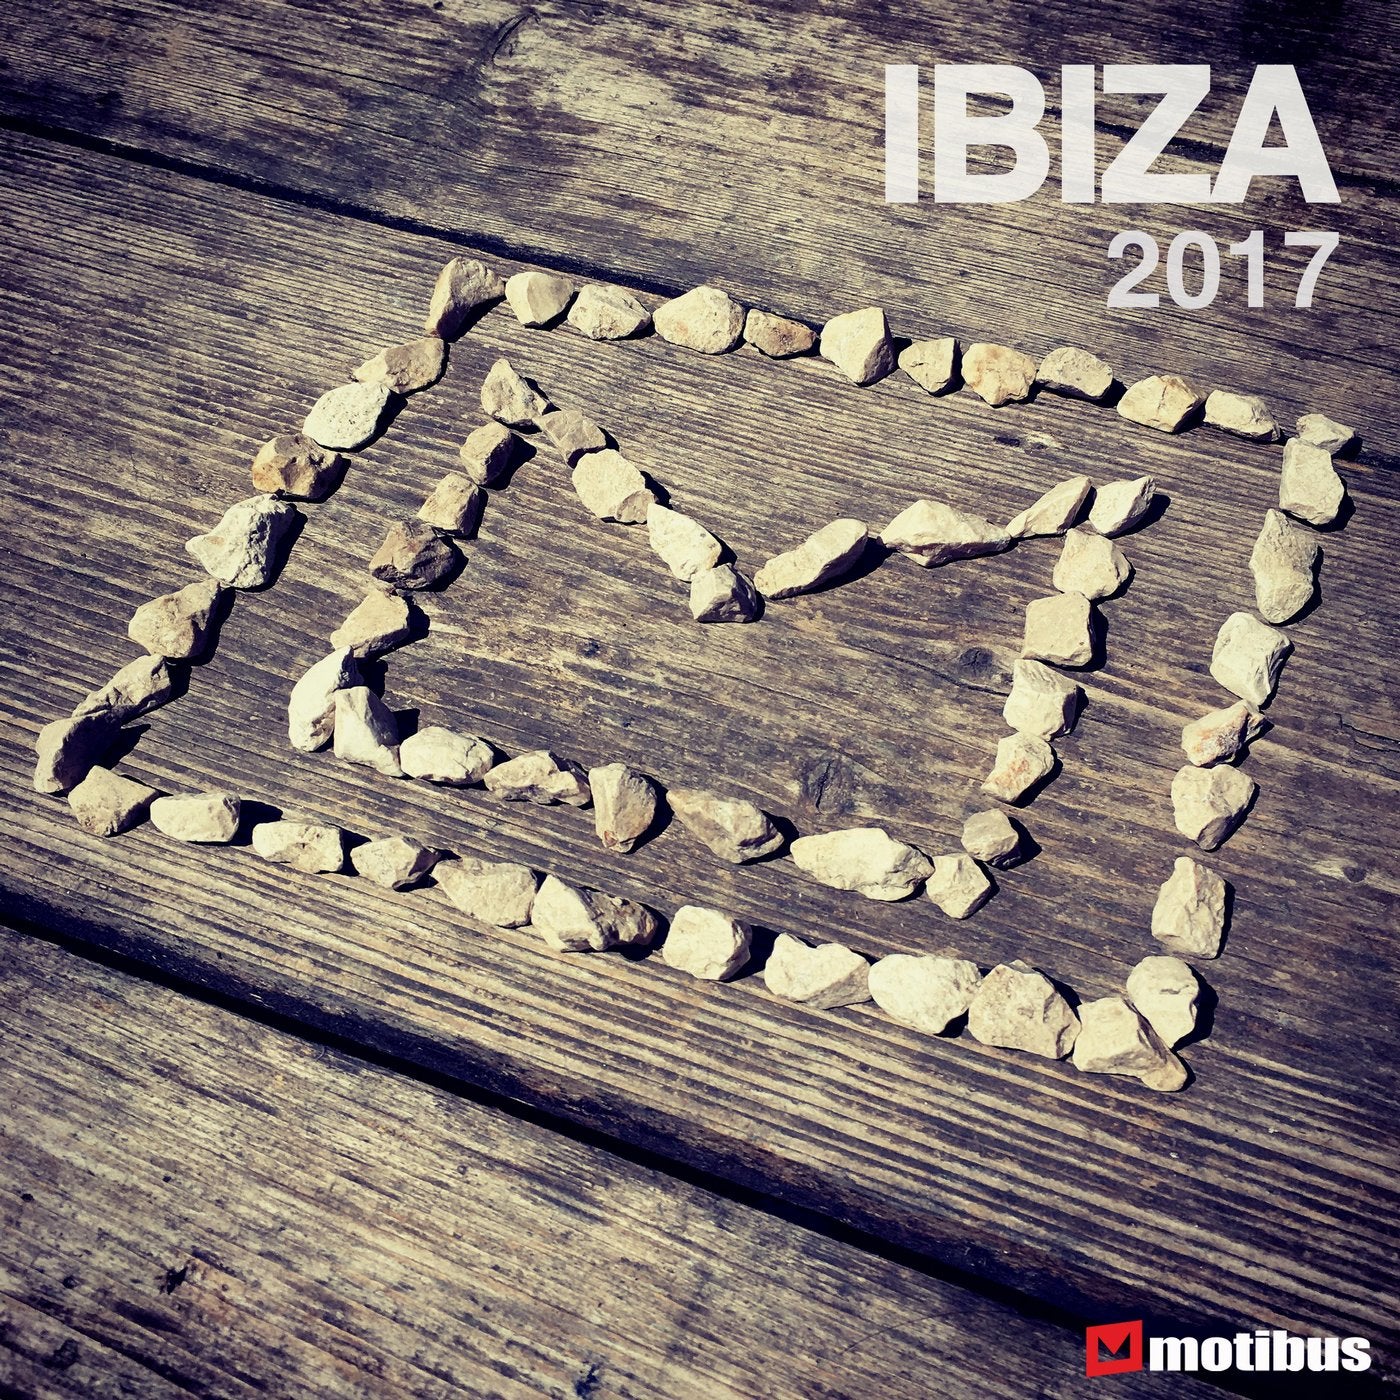 Motibus Ibiza 2017